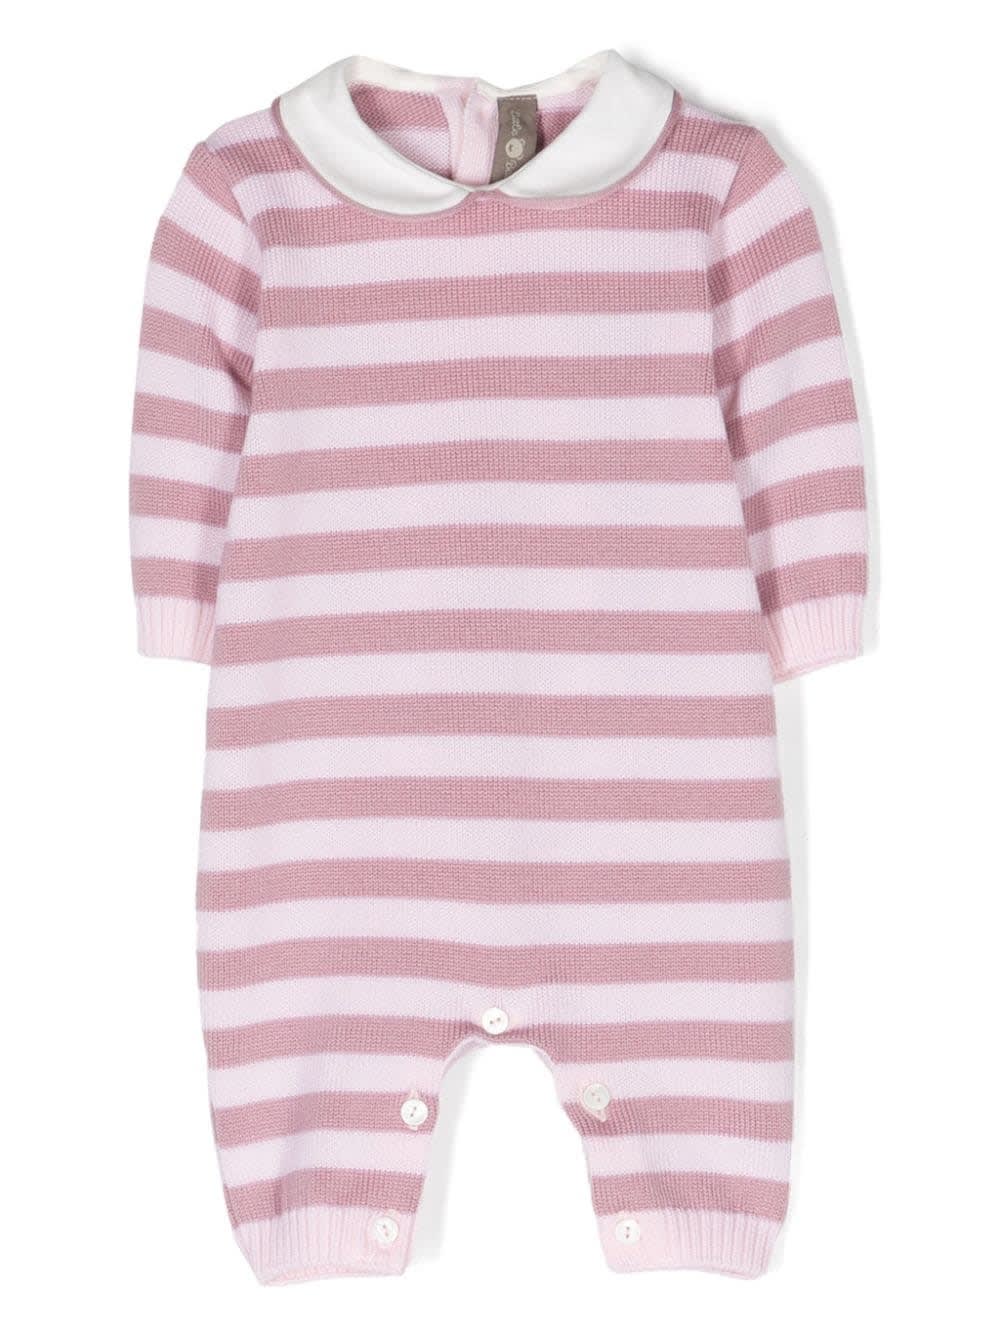 Little Bear Babies' Striped Onesie In Pink